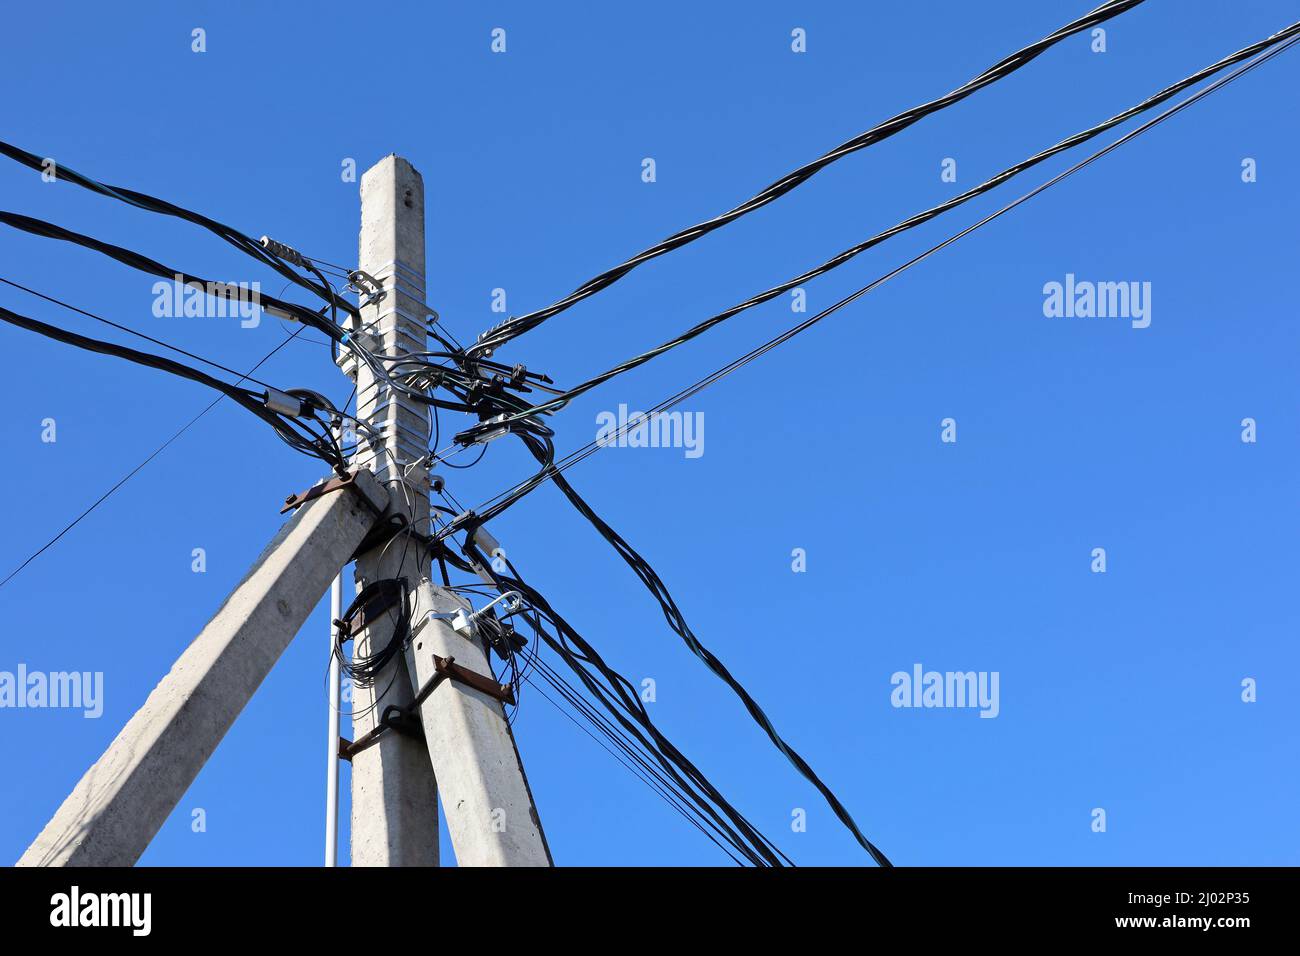 Netzanschluss mit verwickelten elektrischen Drähten und Kondensatoren auf blauem Himmel. Stromübertragungsleitung, Stromversorgung Stockfoto